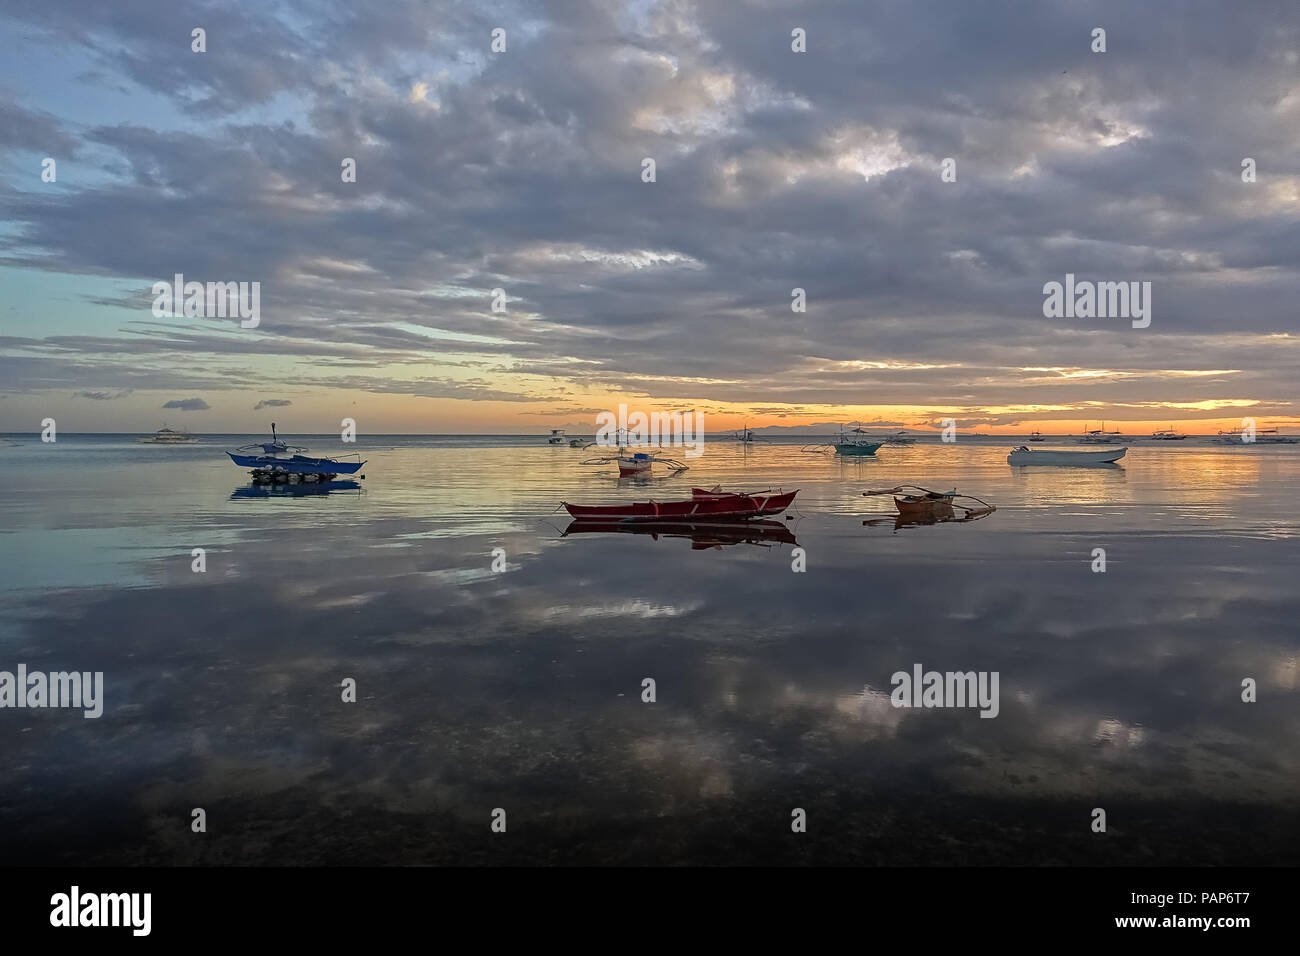 Specchio perfetto paesaggio di riflessione di barche da pesca sotto il cielo nuvoloso, con tropicale, mare vetroso - Panglao, Filippine Foto Stock